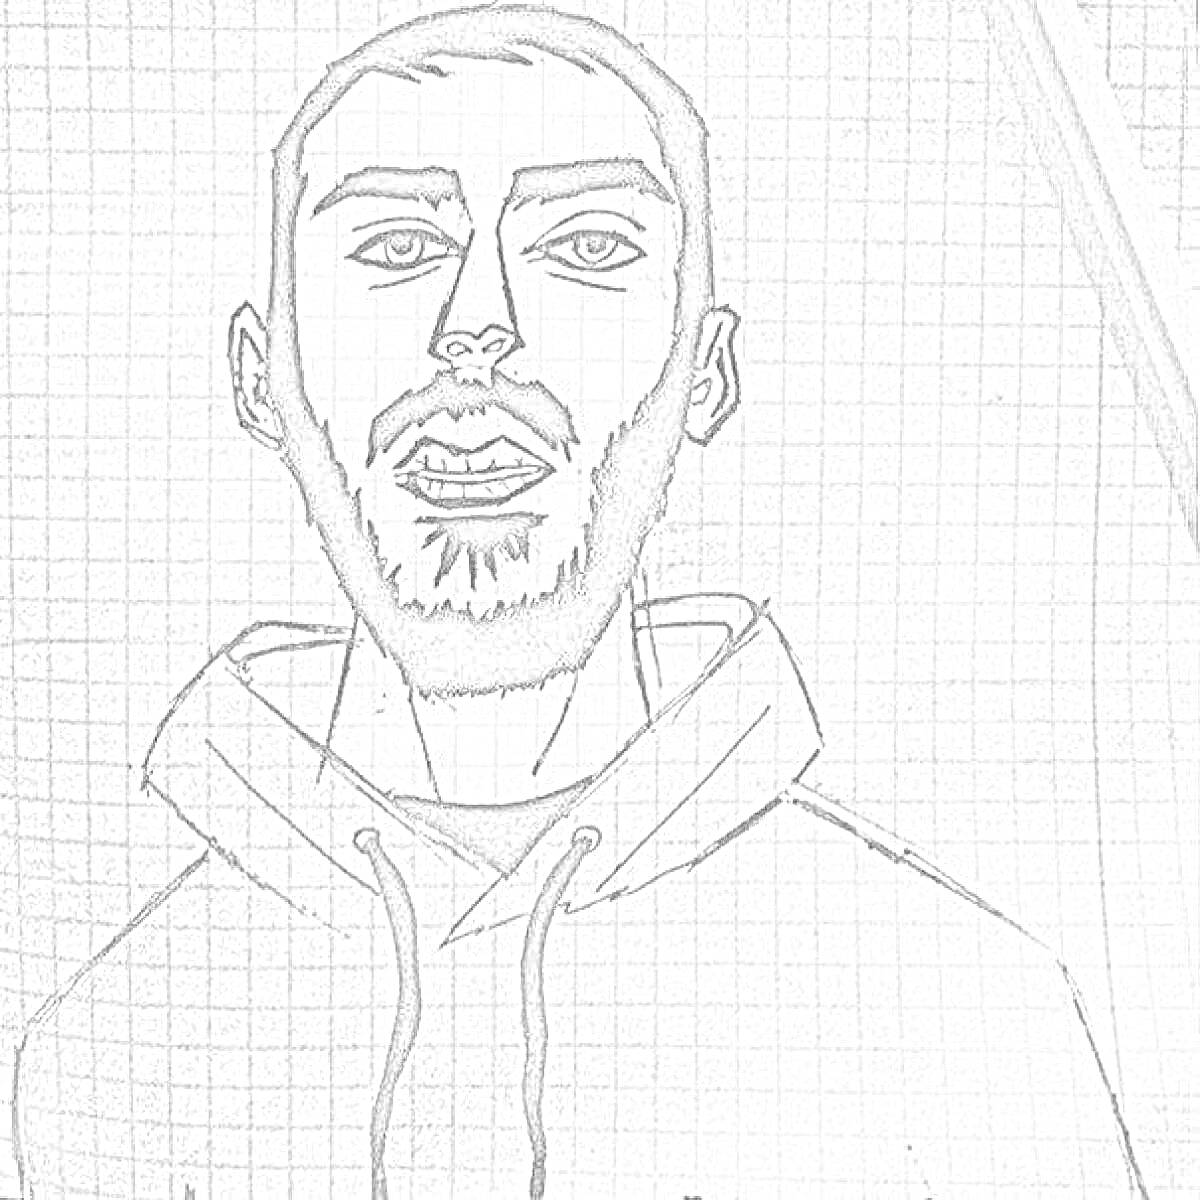 Портрет мужчины в худи, выполненный карандашом на миллиметровой бумаге